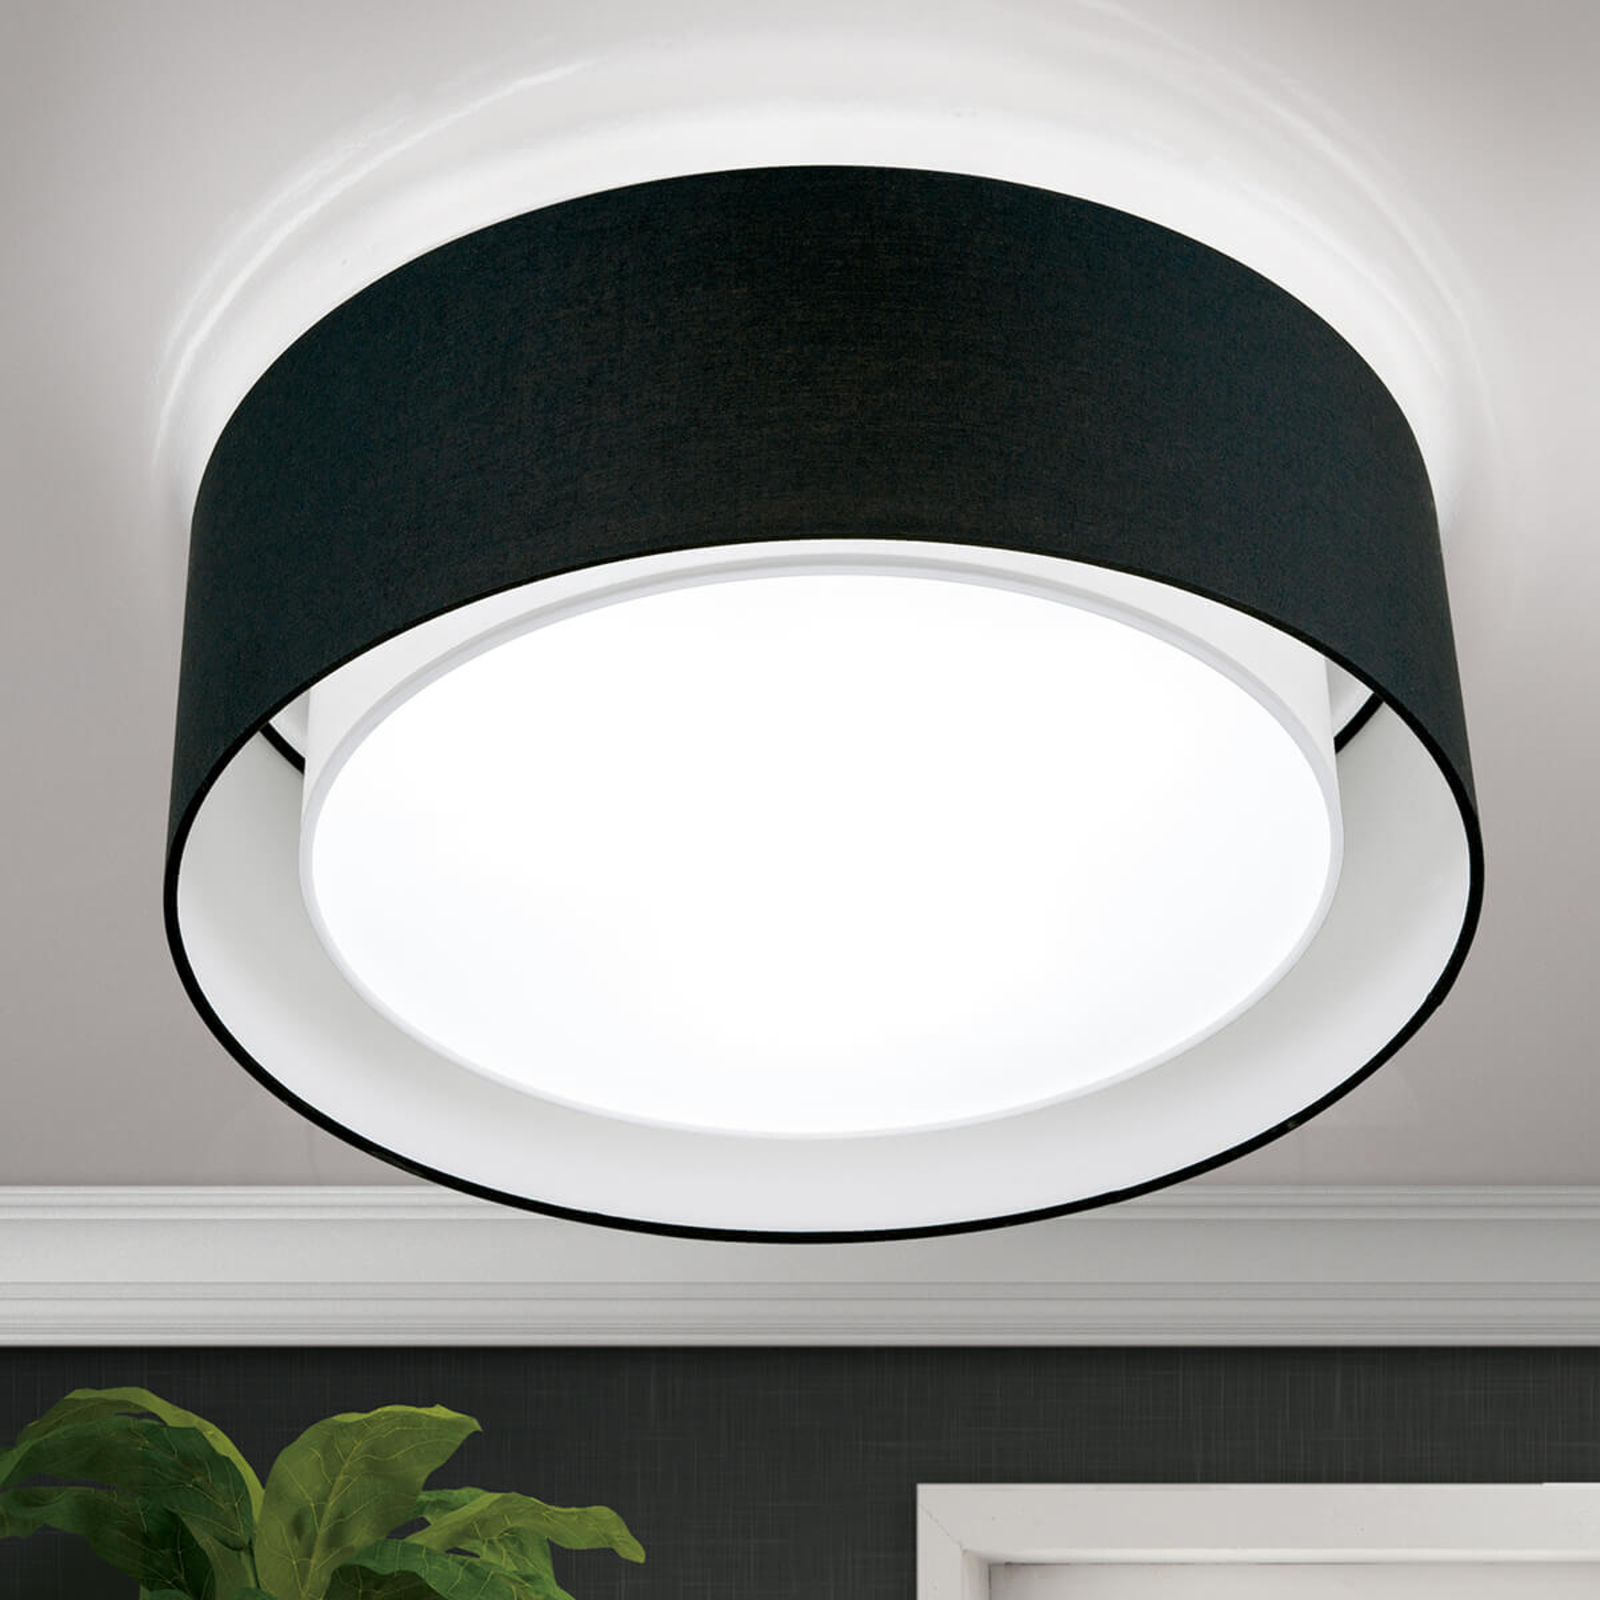 Round fabric ceiling light Antoni in black